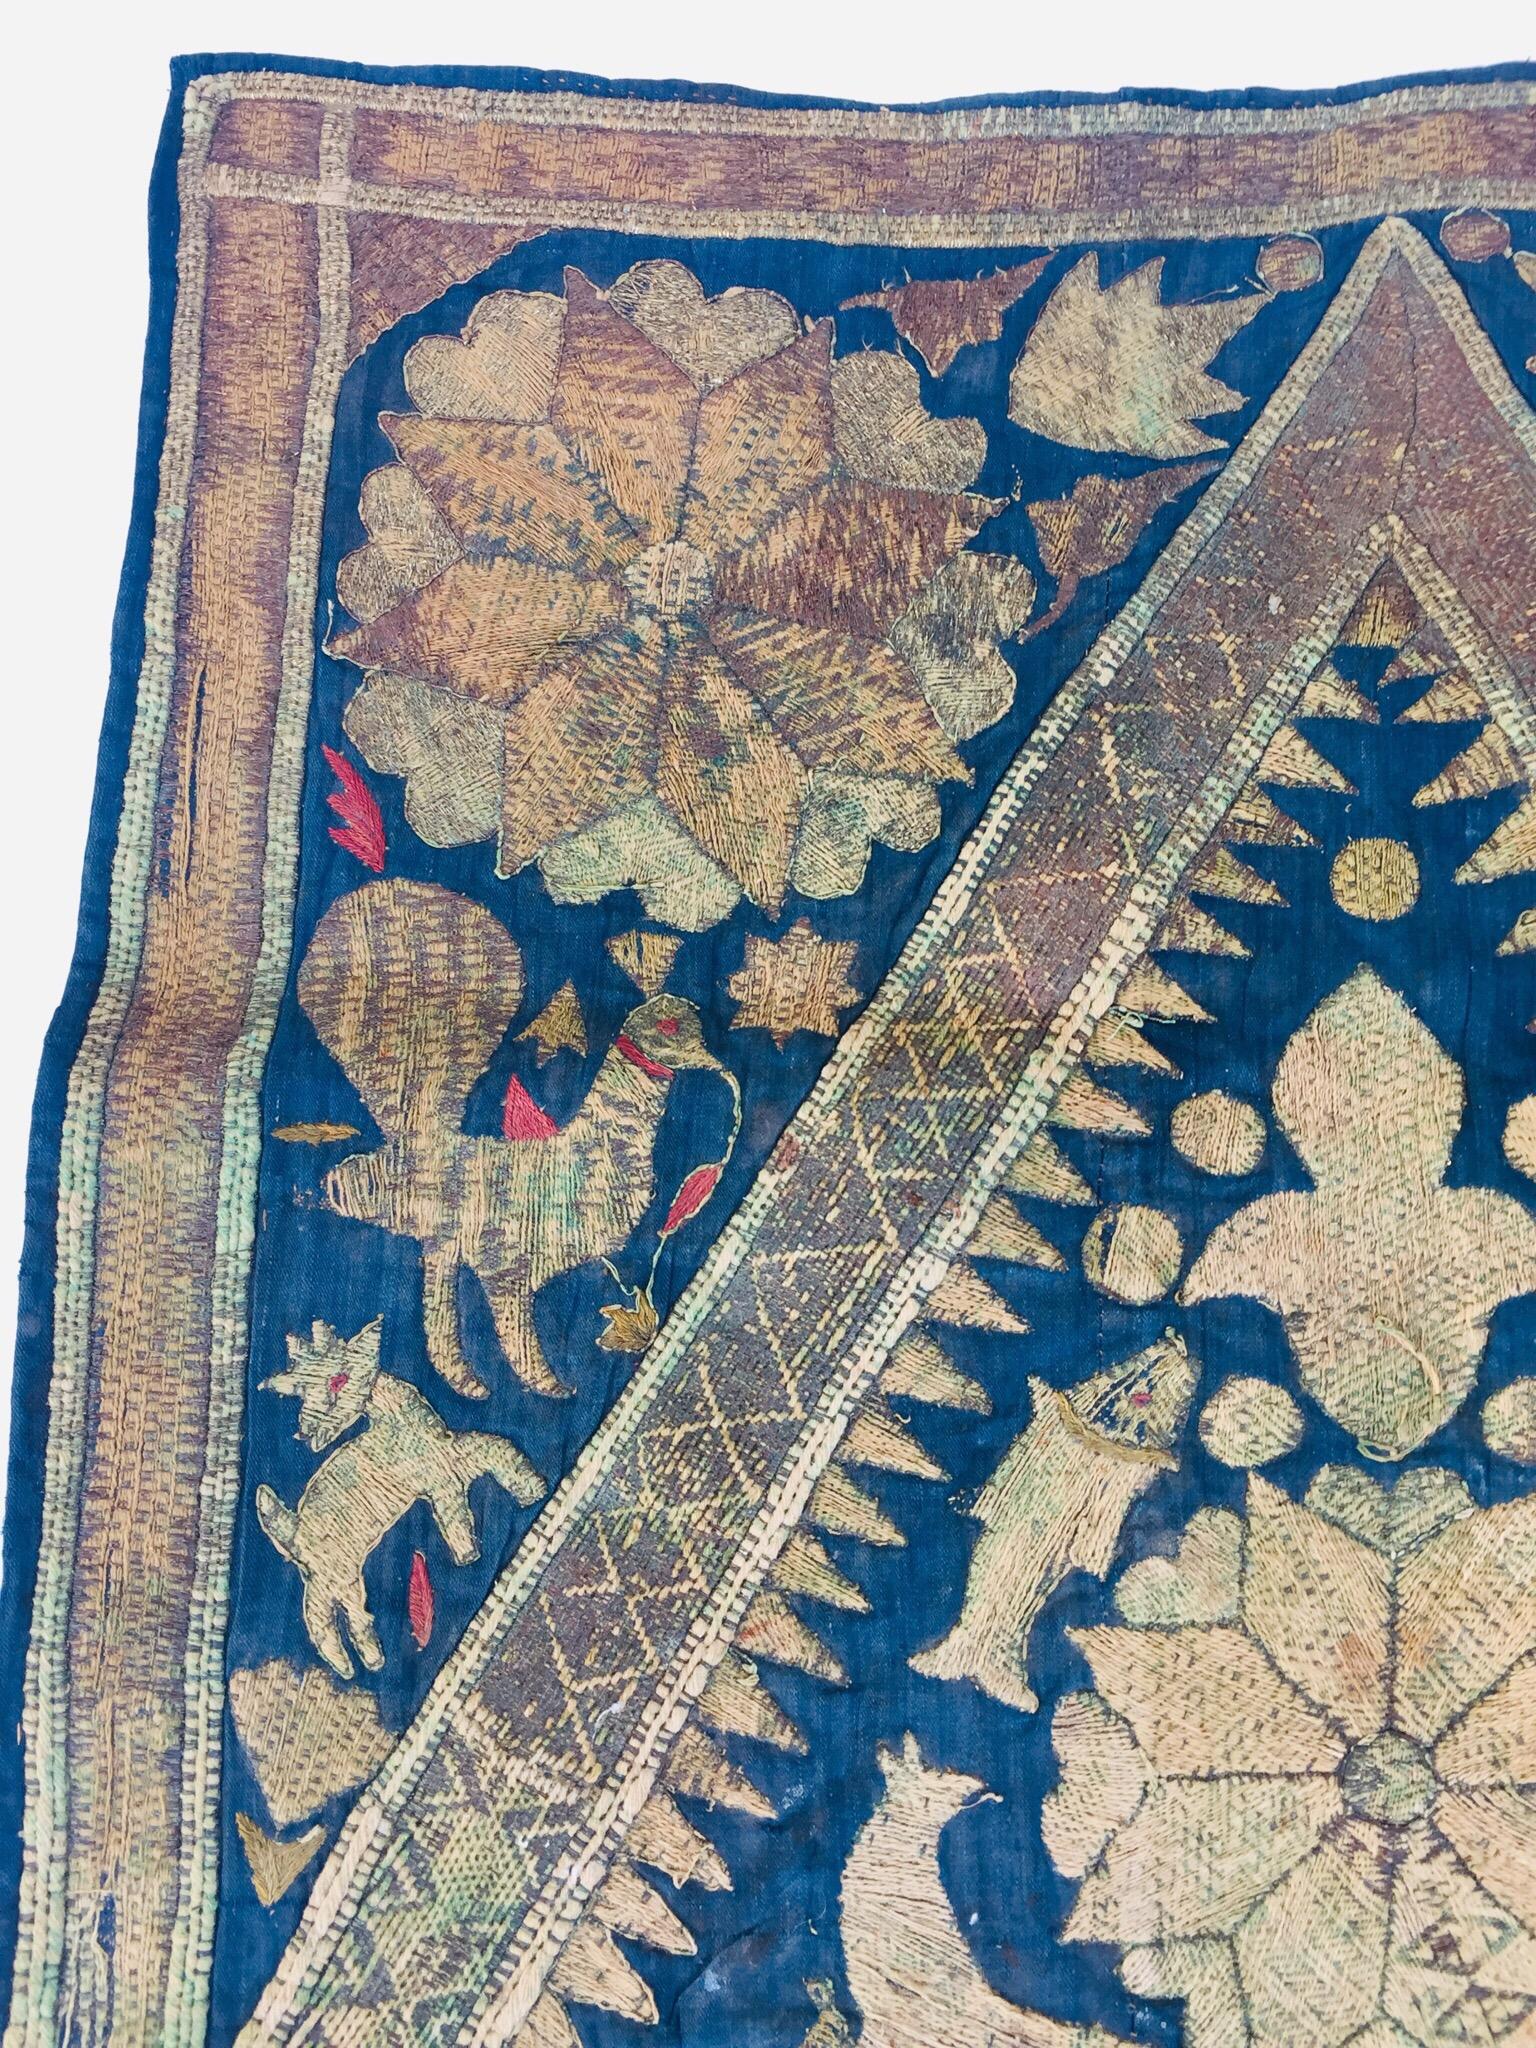 19th Century Moorish Islamic Ottoman Empire Textile Metallic Embroidered 1